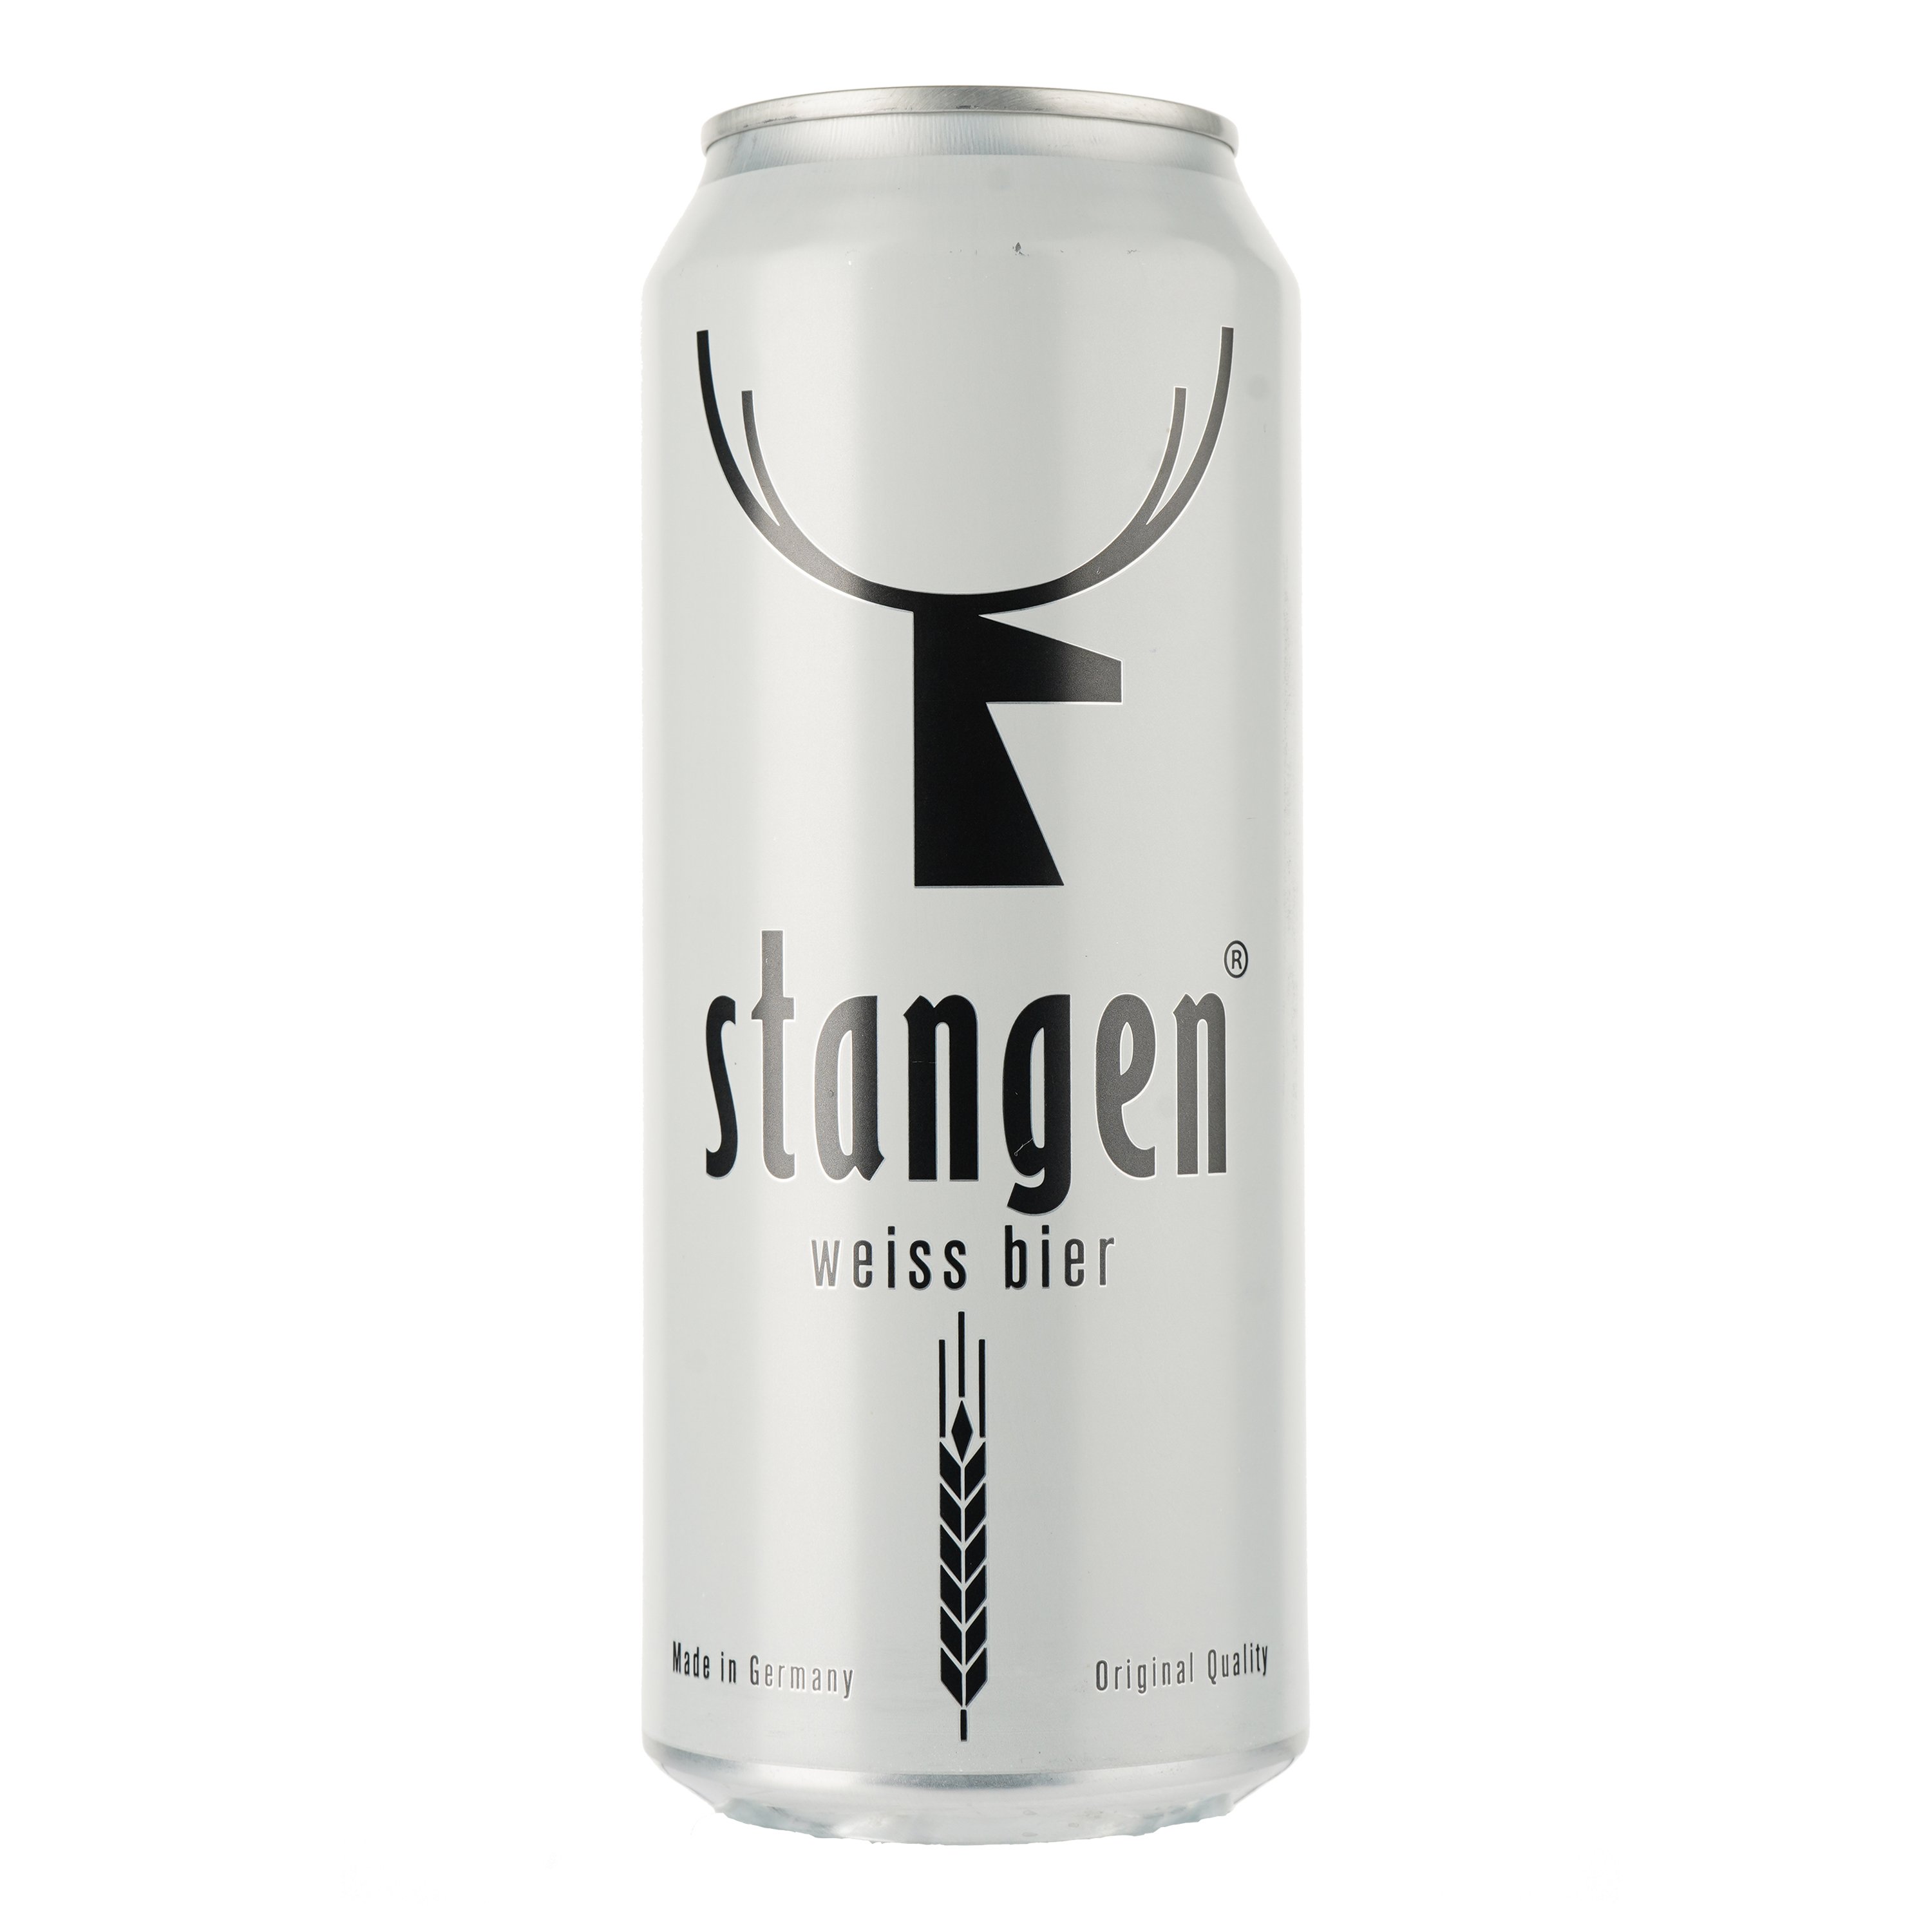 Пиво Stangen Weiss bier, светлое, нефильтрованное, 4,9%, ж/б, 0,5 л - фото 1